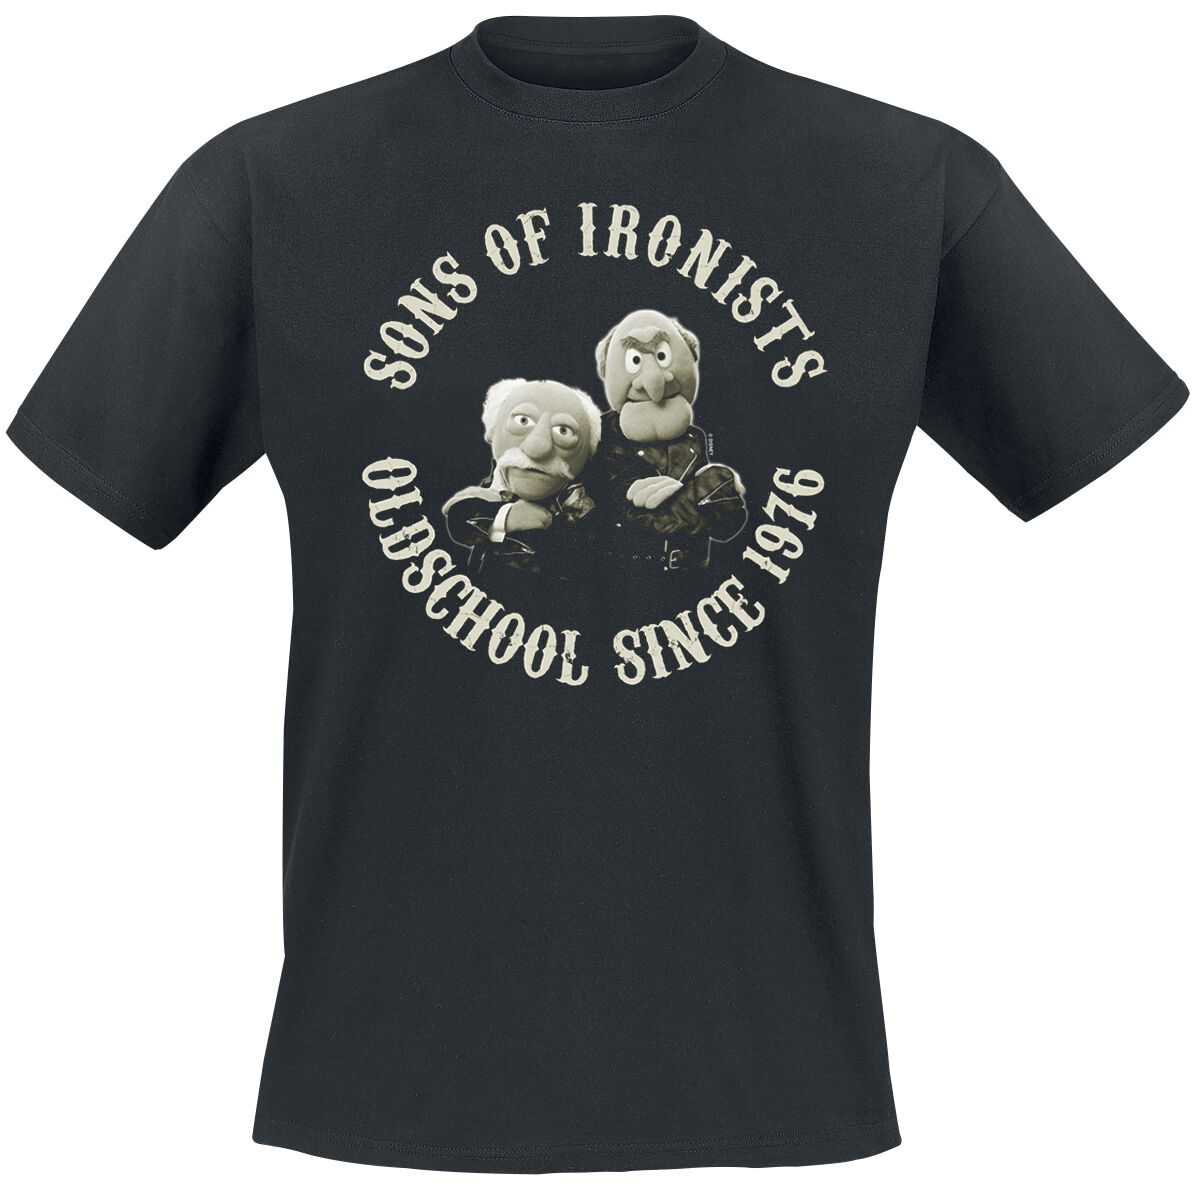 Die Muppets T-Shirt - Sons Of Ironists - M bis 5XL - für Männer - Größe 4XL - schwarz  - Lizenzierter Fanartikel